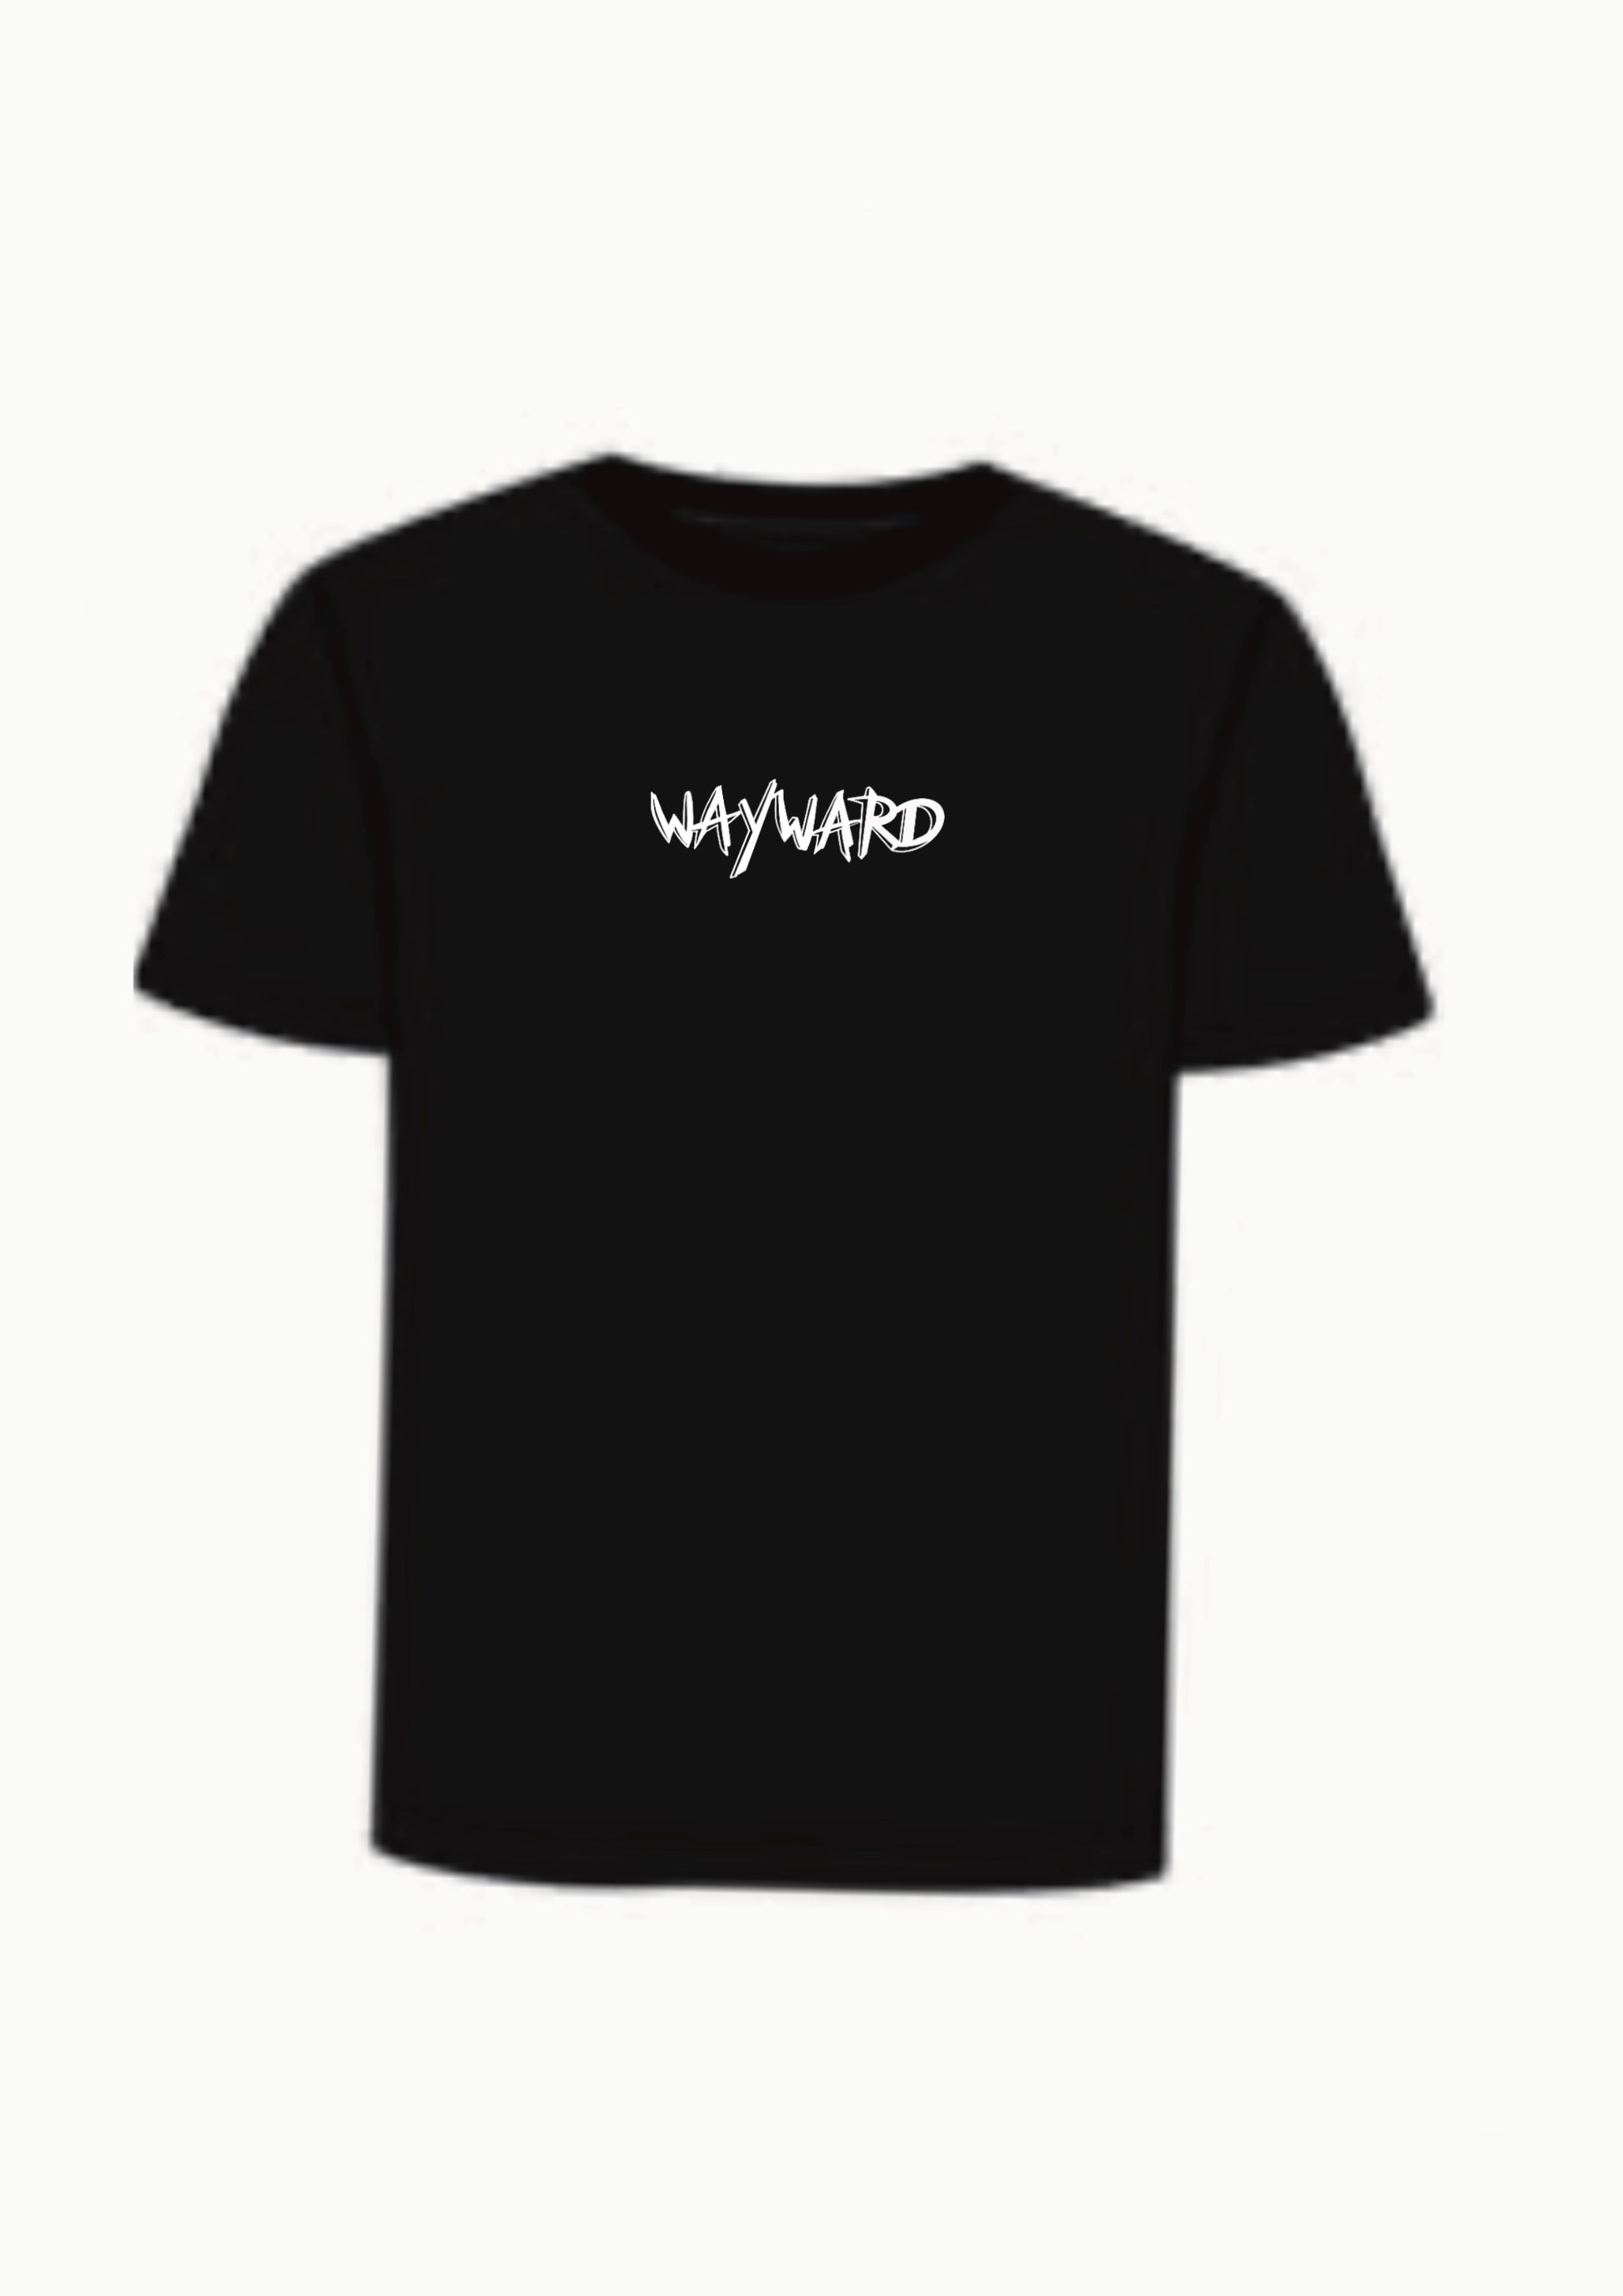 Wayward Writing With Skull Logo Back - Hand Screen Printed T-shirt